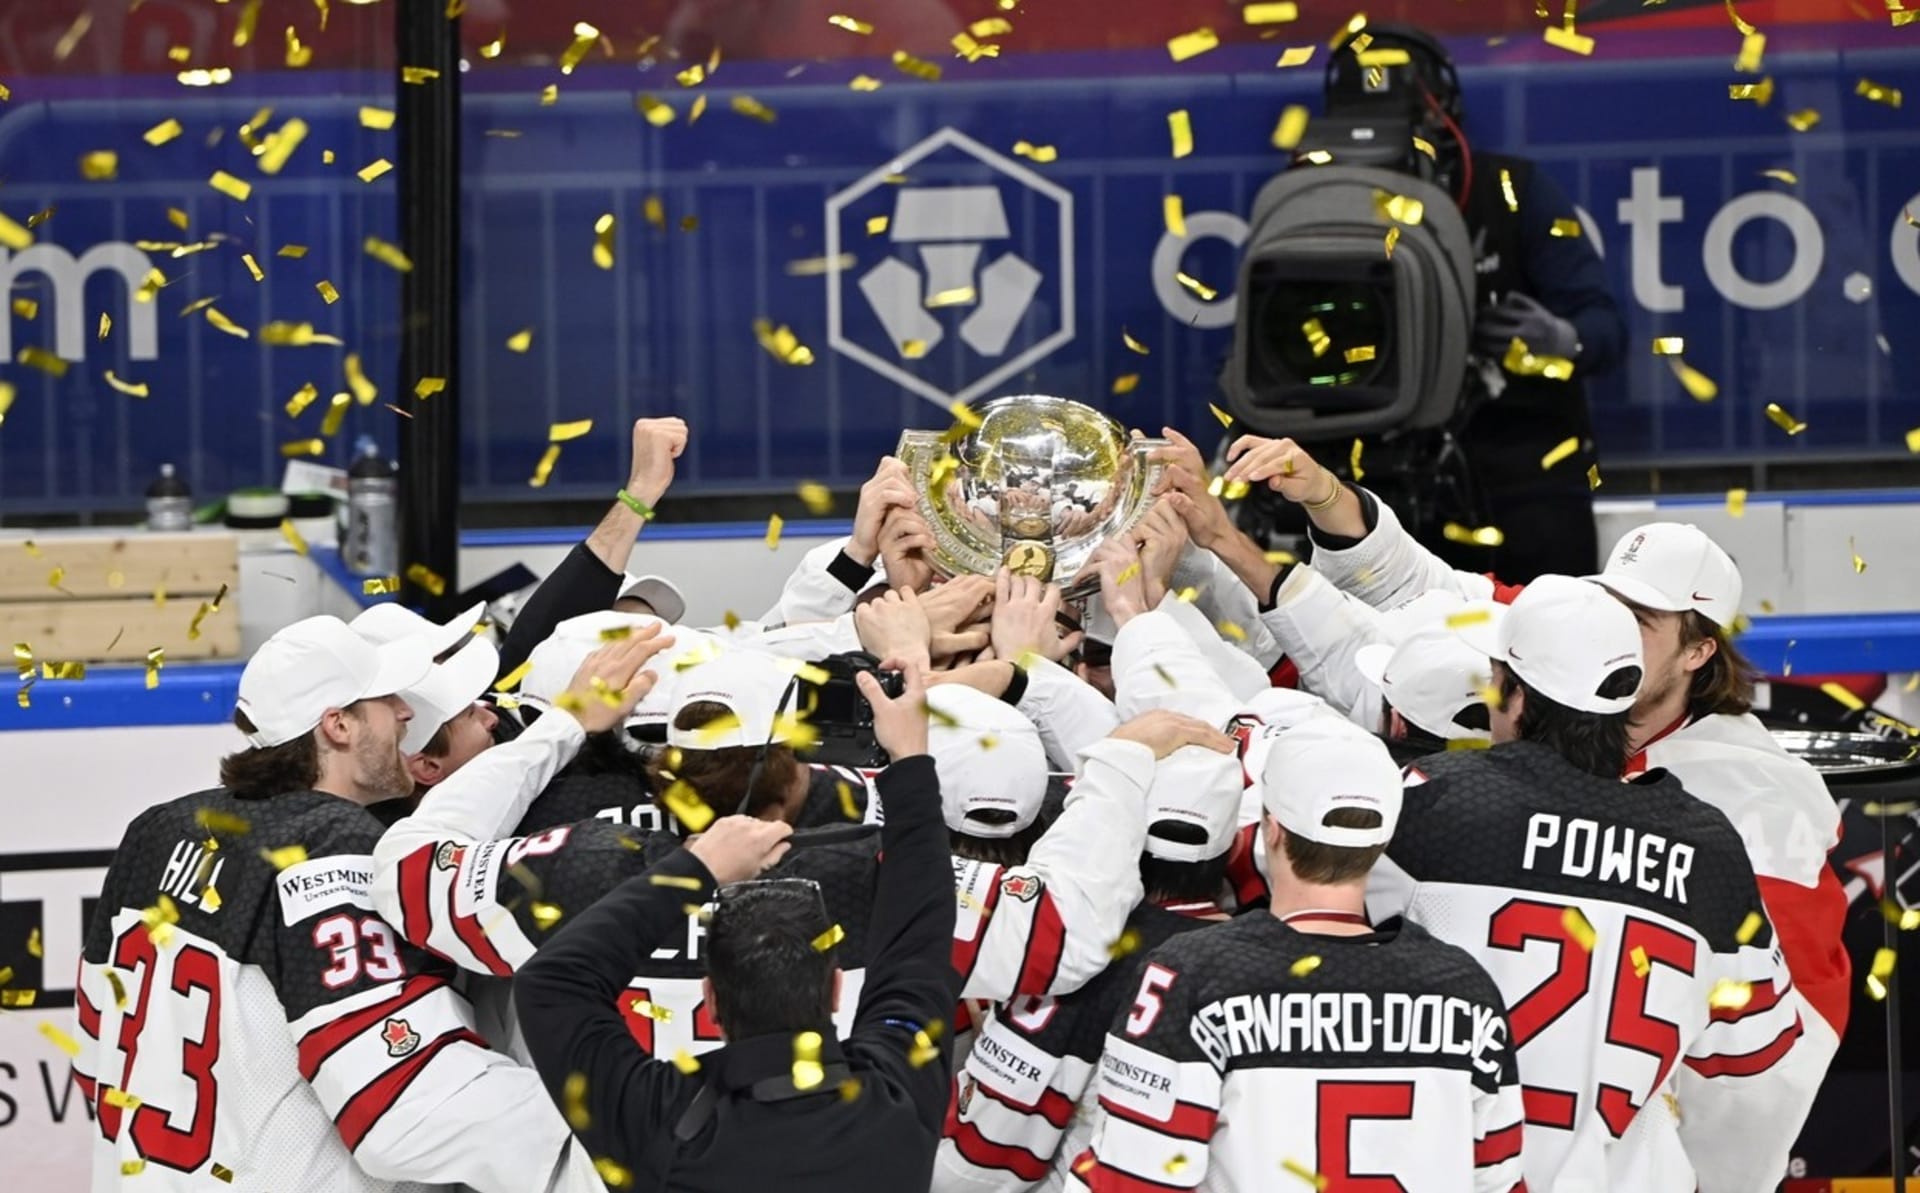 Kanada získala 27. titul z mistrovství světa.